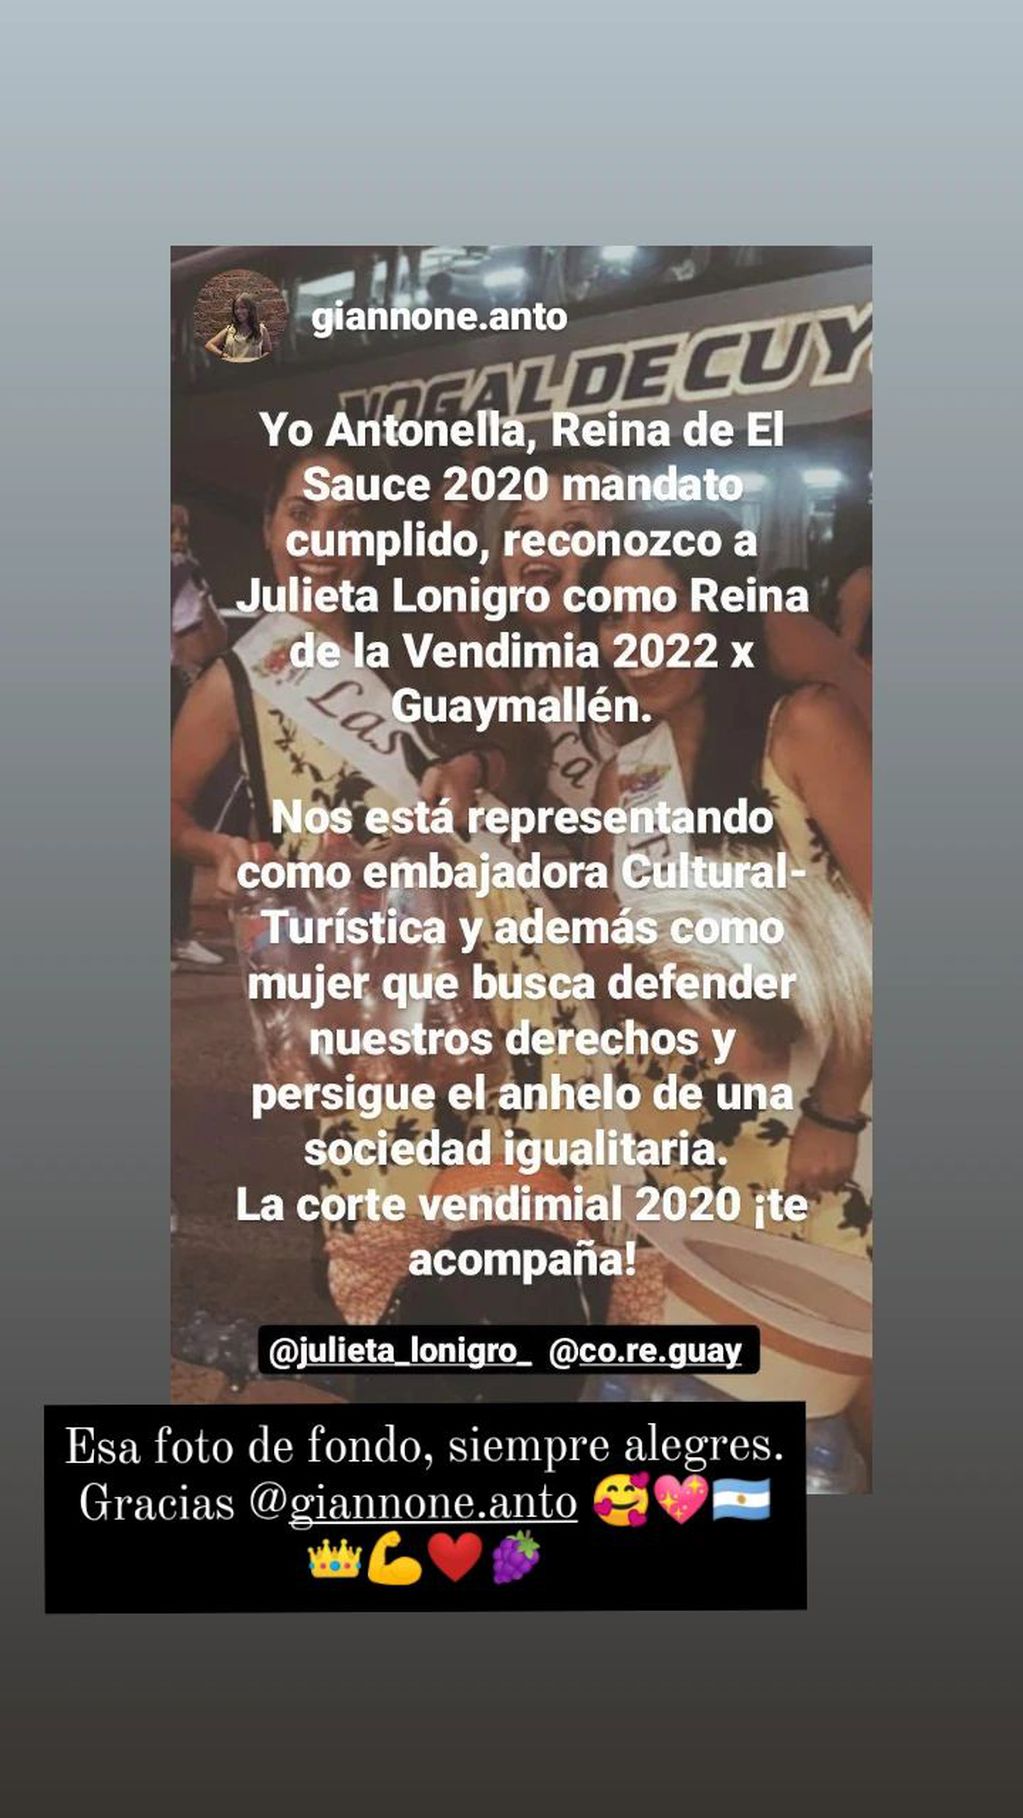 Las reinas distritales 2020 apoyan a Julieta Lonigro como reina departamental de Guaymallén 2022.